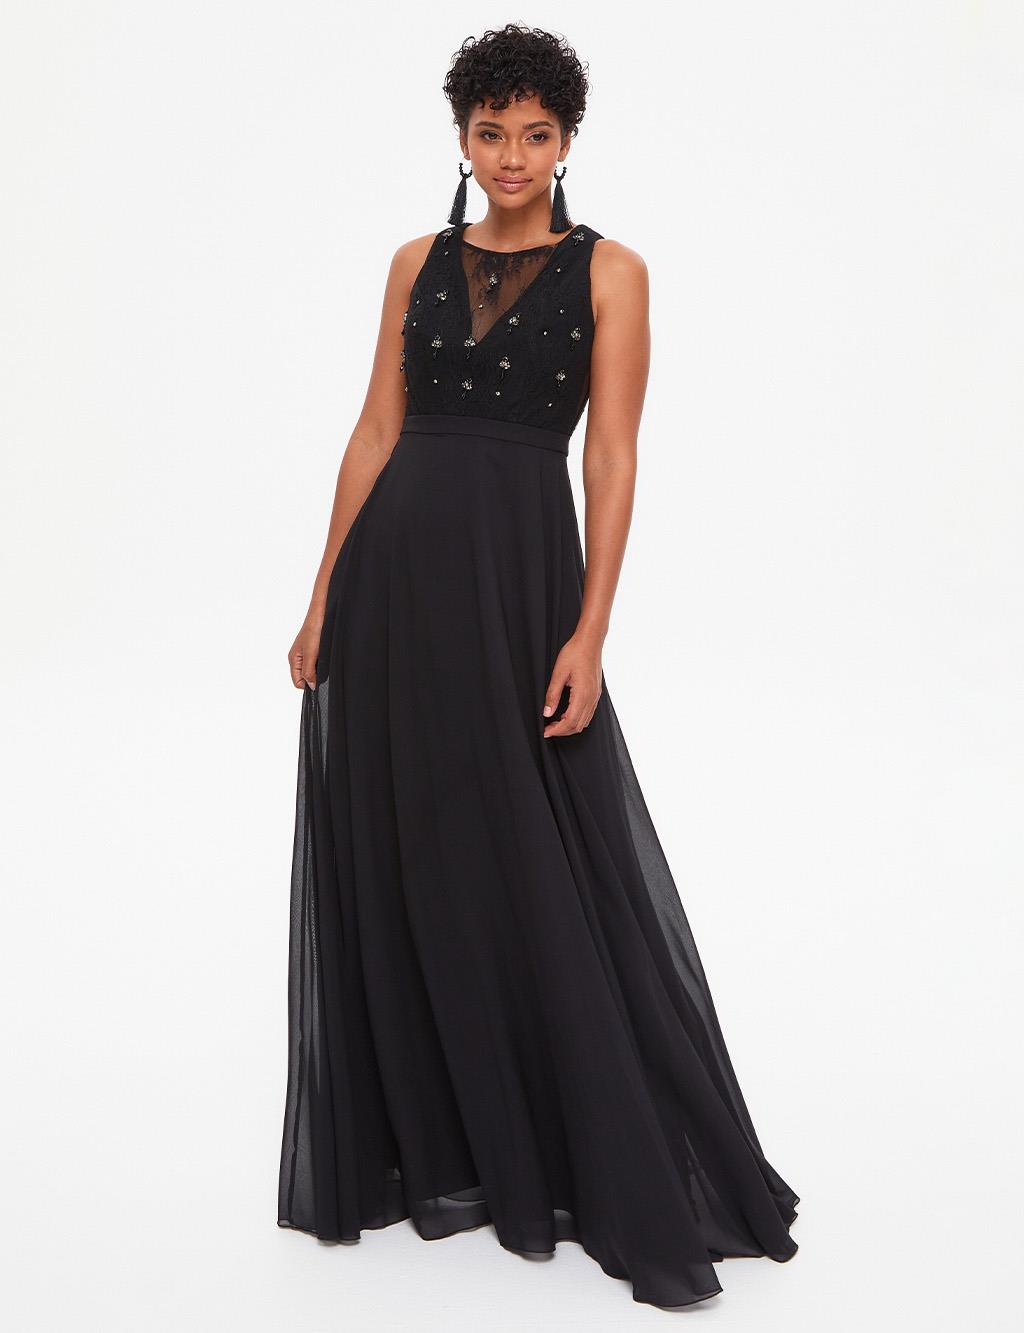 TIARA Illusion Collar Evening Dress Black